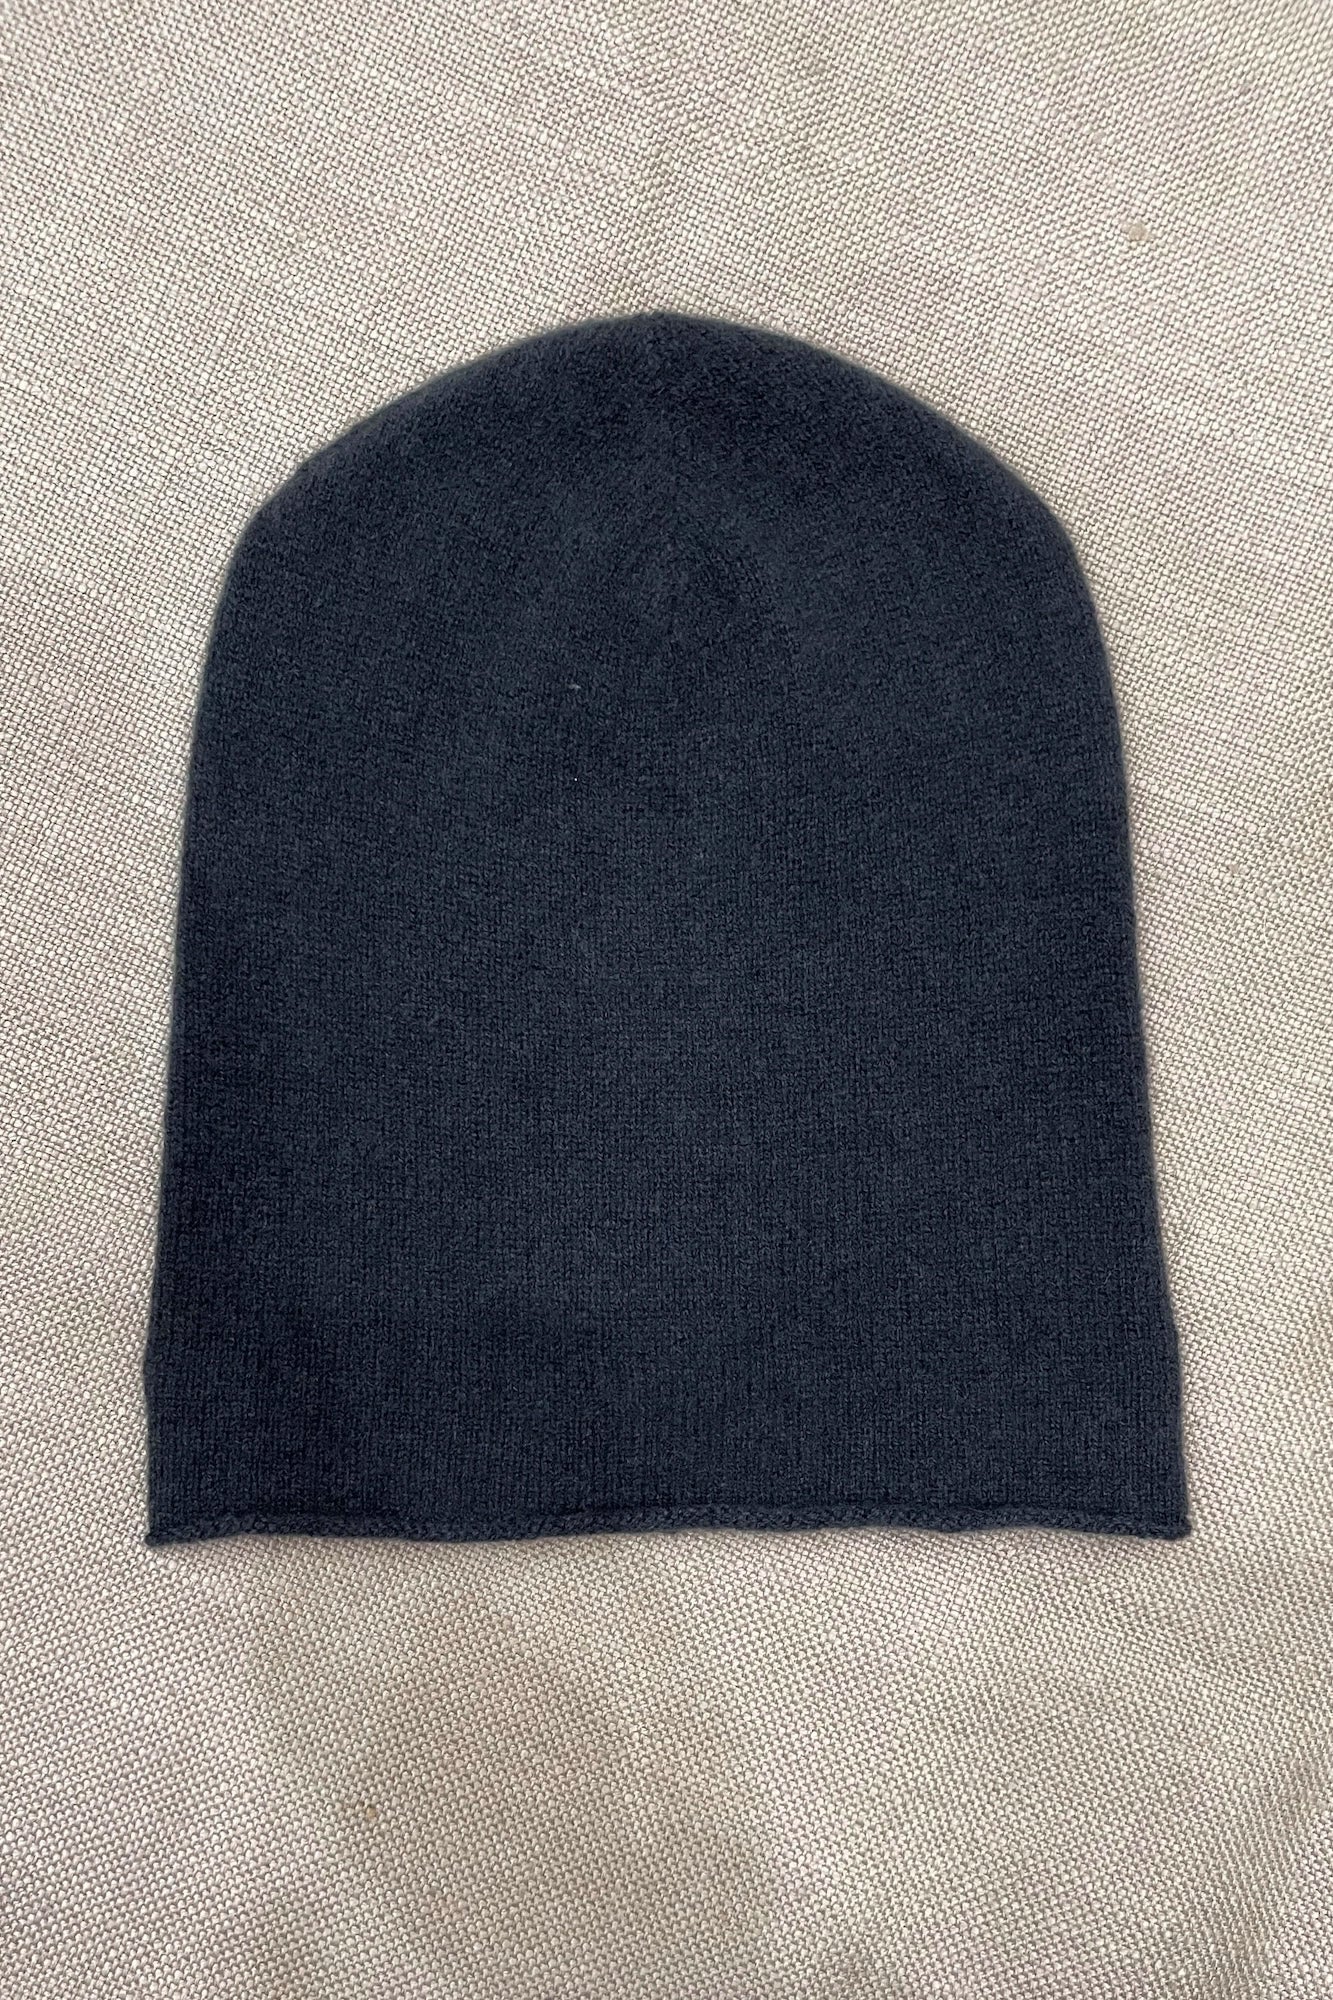 Luxury Cashmere Beanie Hat in Navy Blue